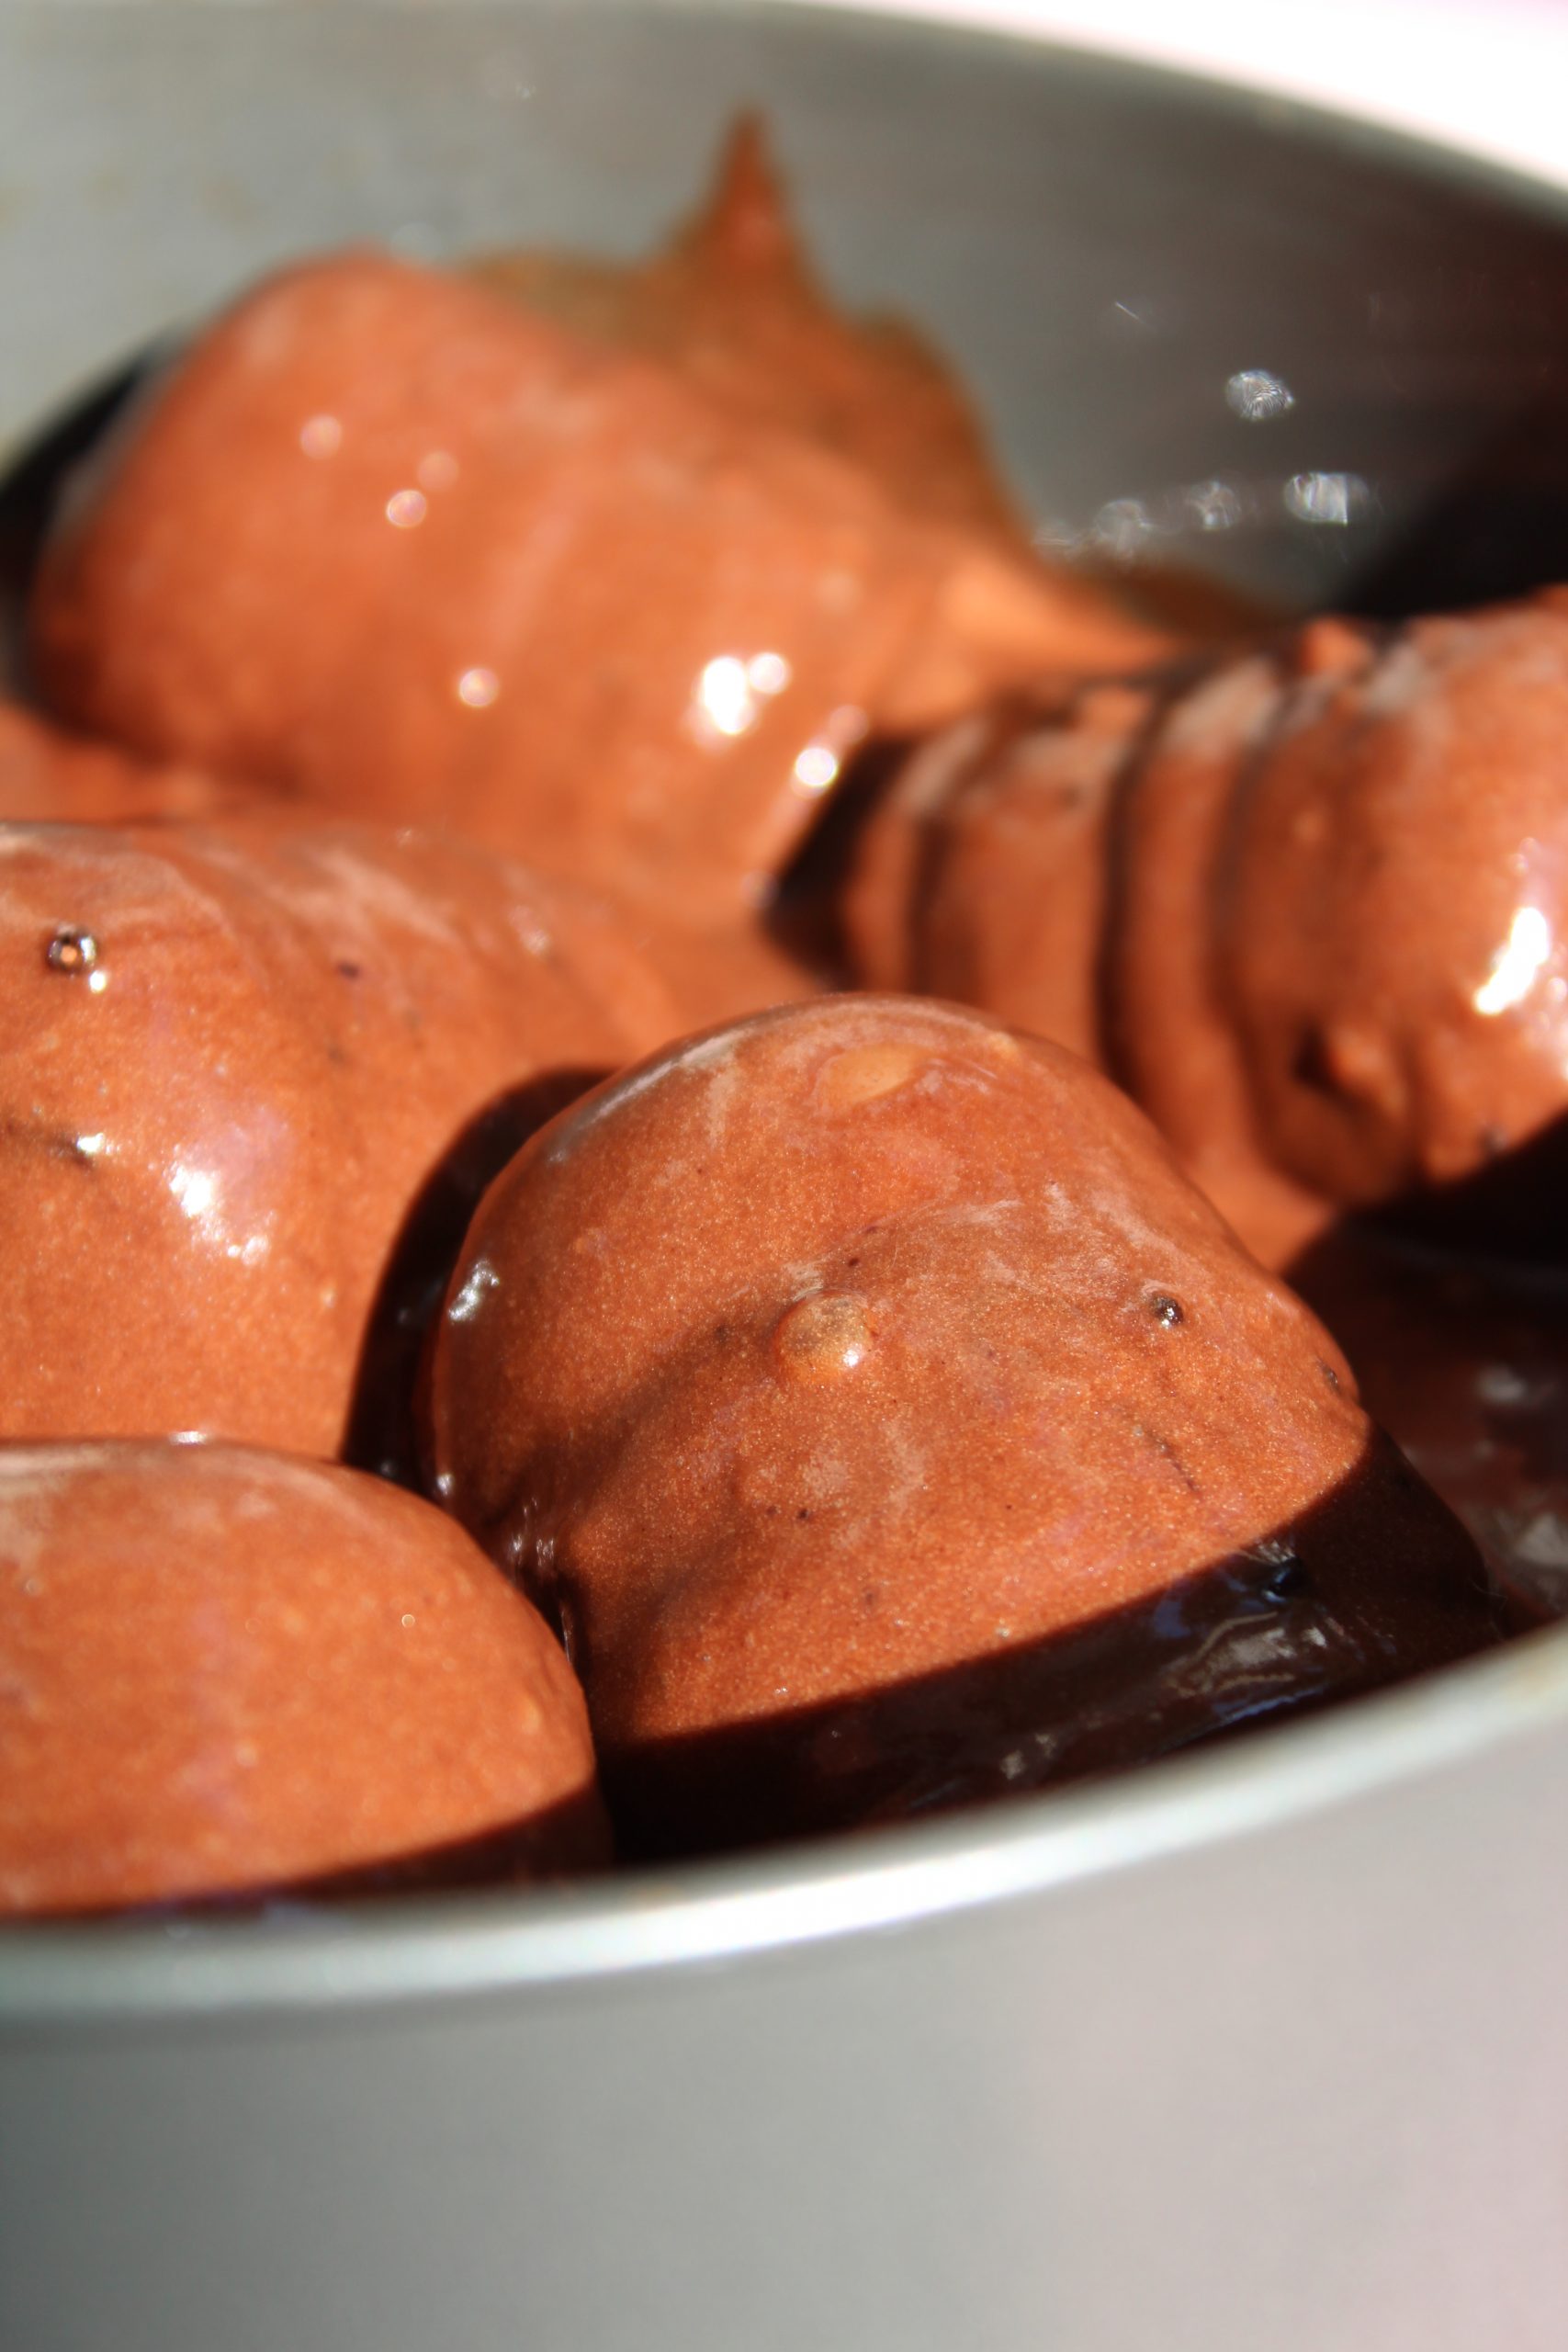 עוגת קרמבו פרווה - עוגת שוקולד קקאו במילוי קרמבו (ביסקוויט ומרנג מרשמלו) בציפוי גנאש שוקולד מריר